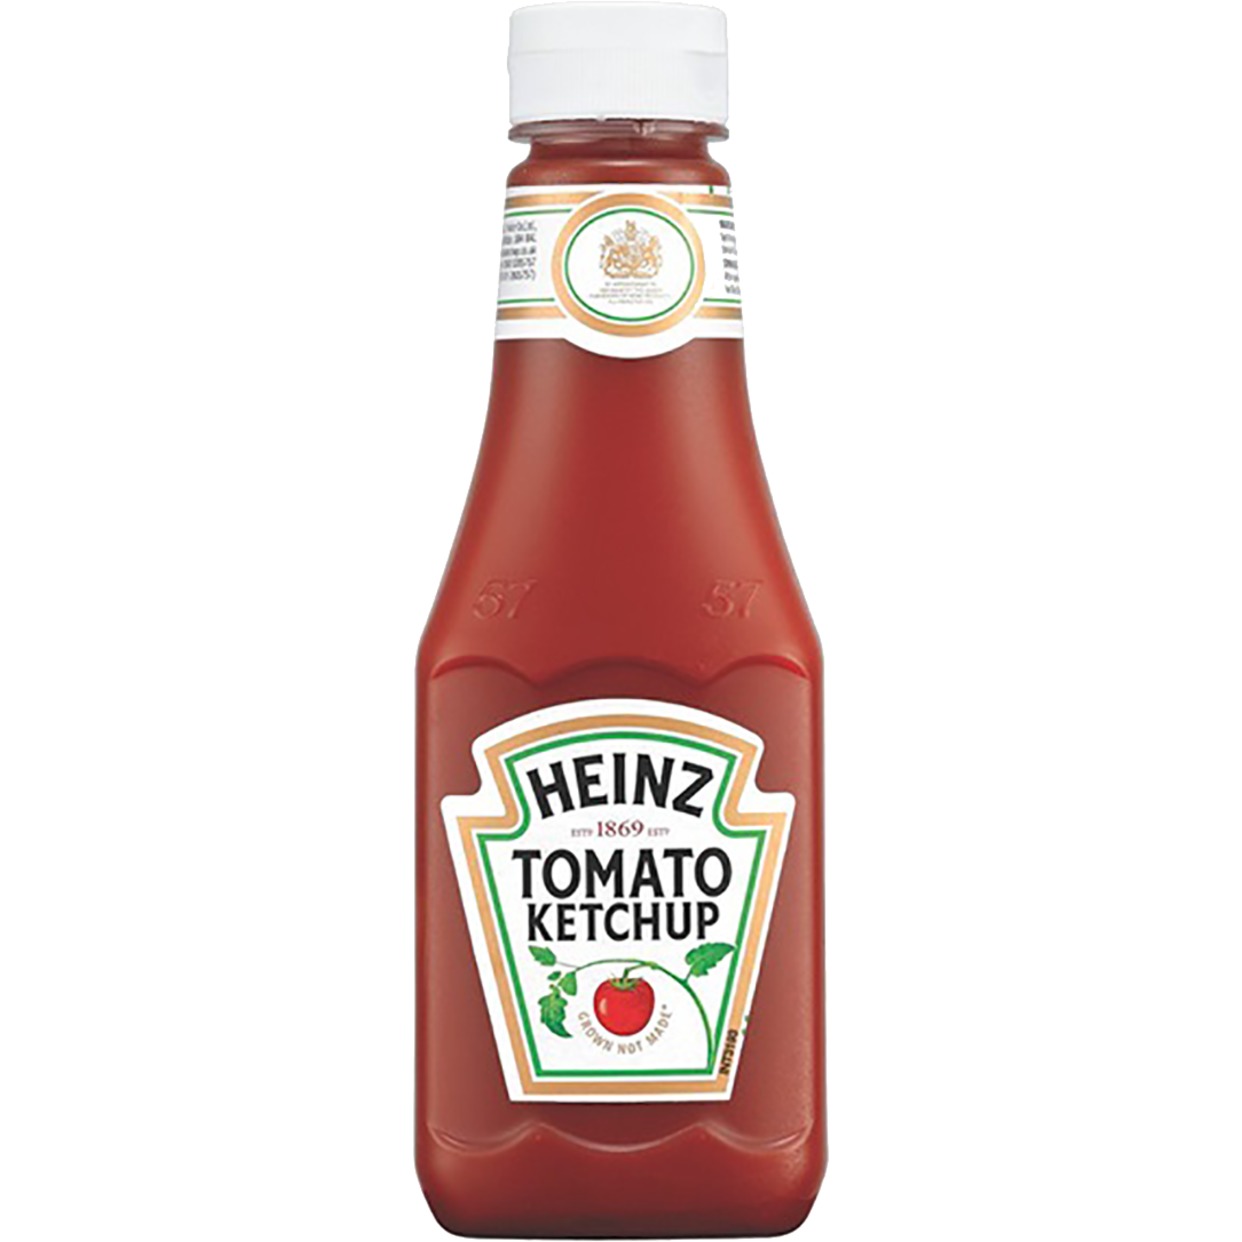 Томатный кетчуп Heinz 342г по акции в Пятерочке